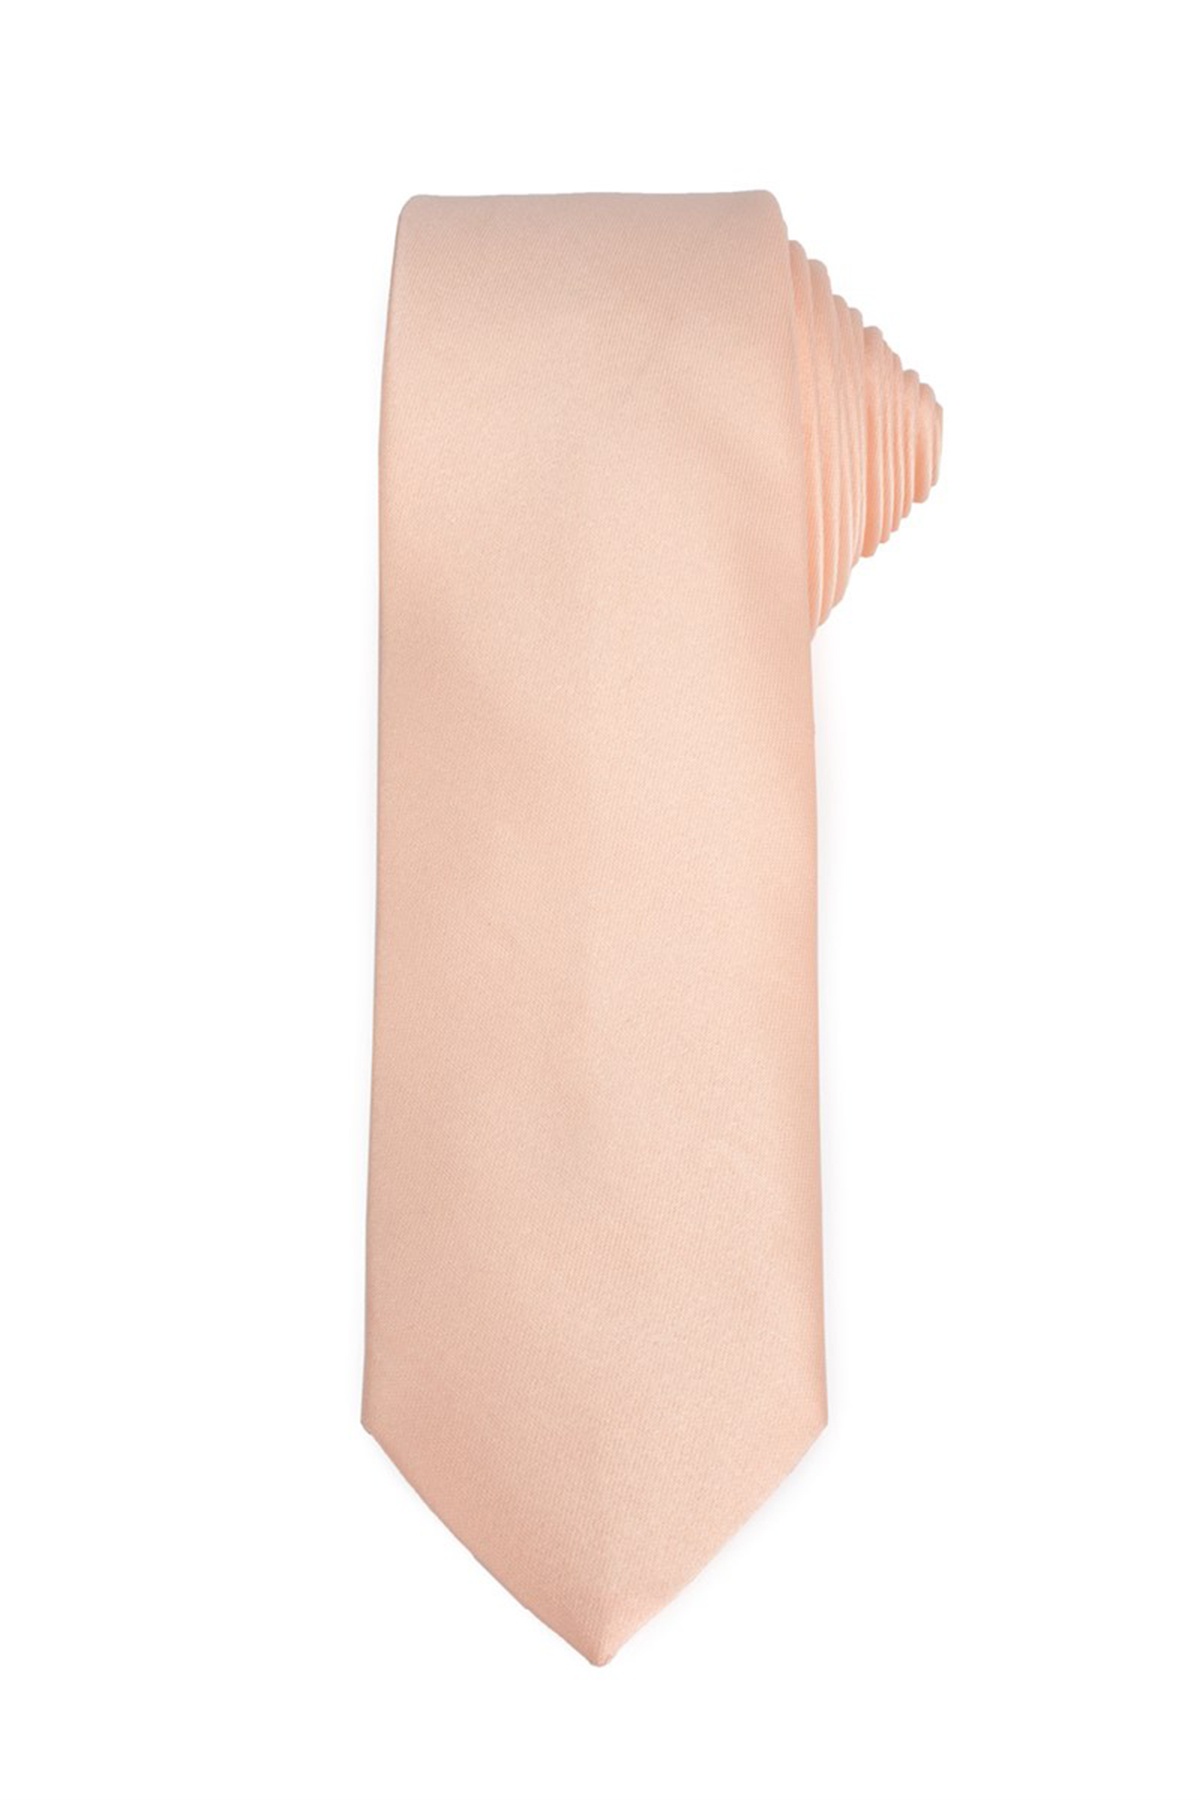 Lazacrózsaszín színű vékony nyakkendő